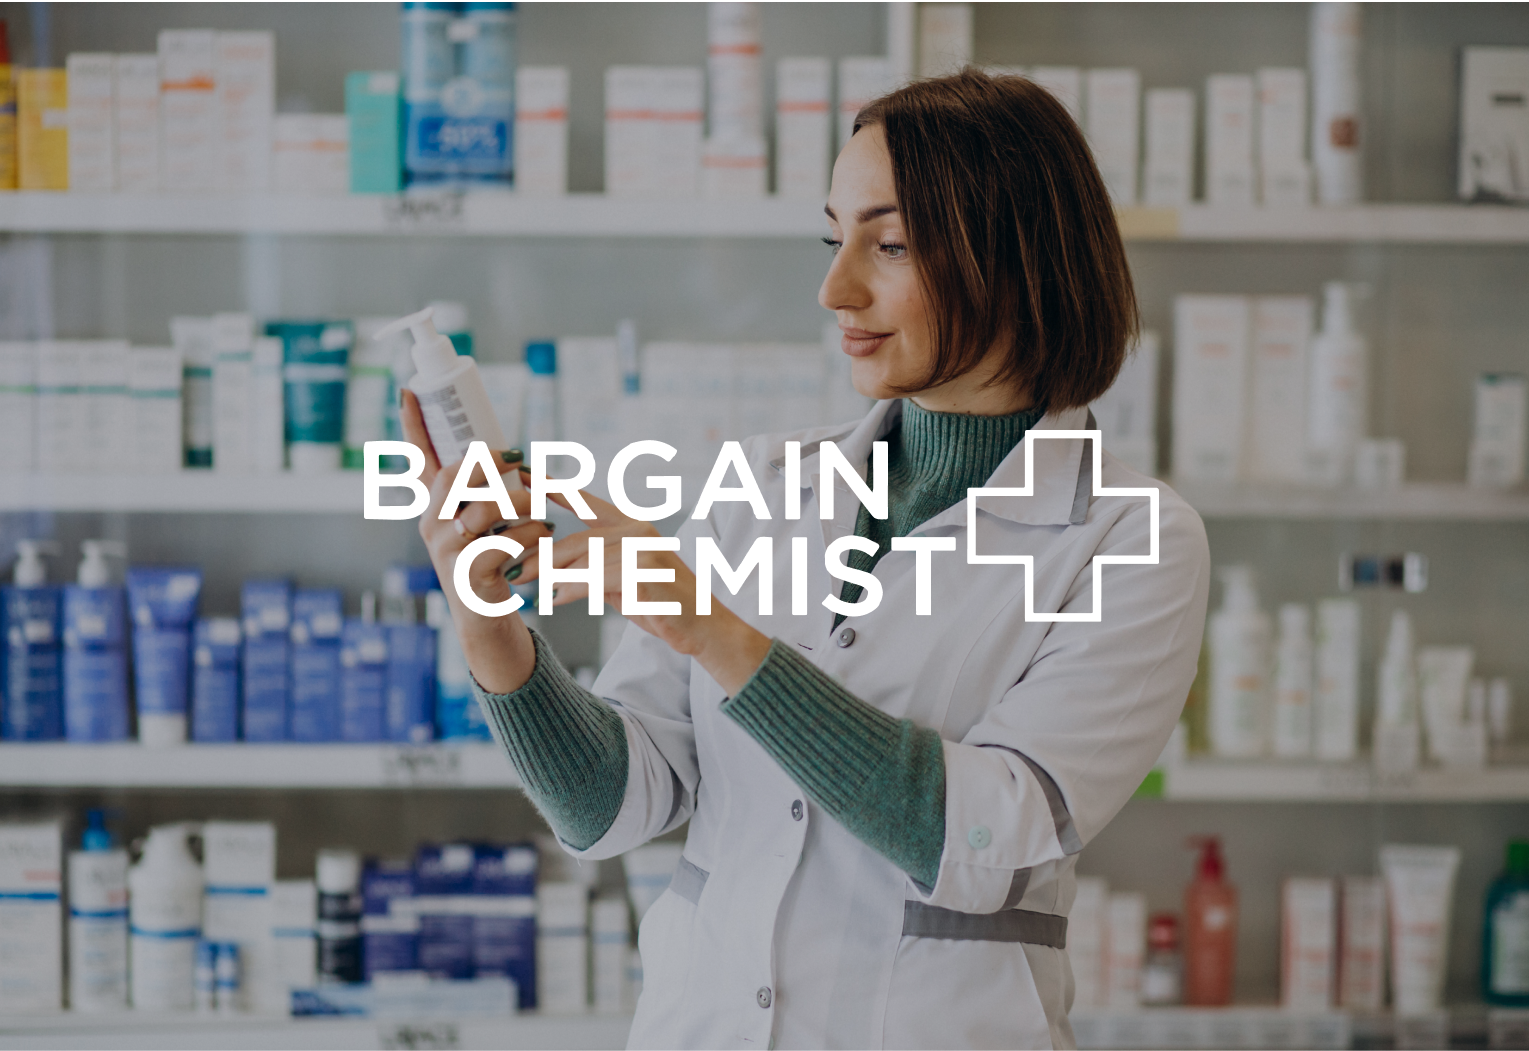 Bargain Chemist Online Pharmacist Logo and Background